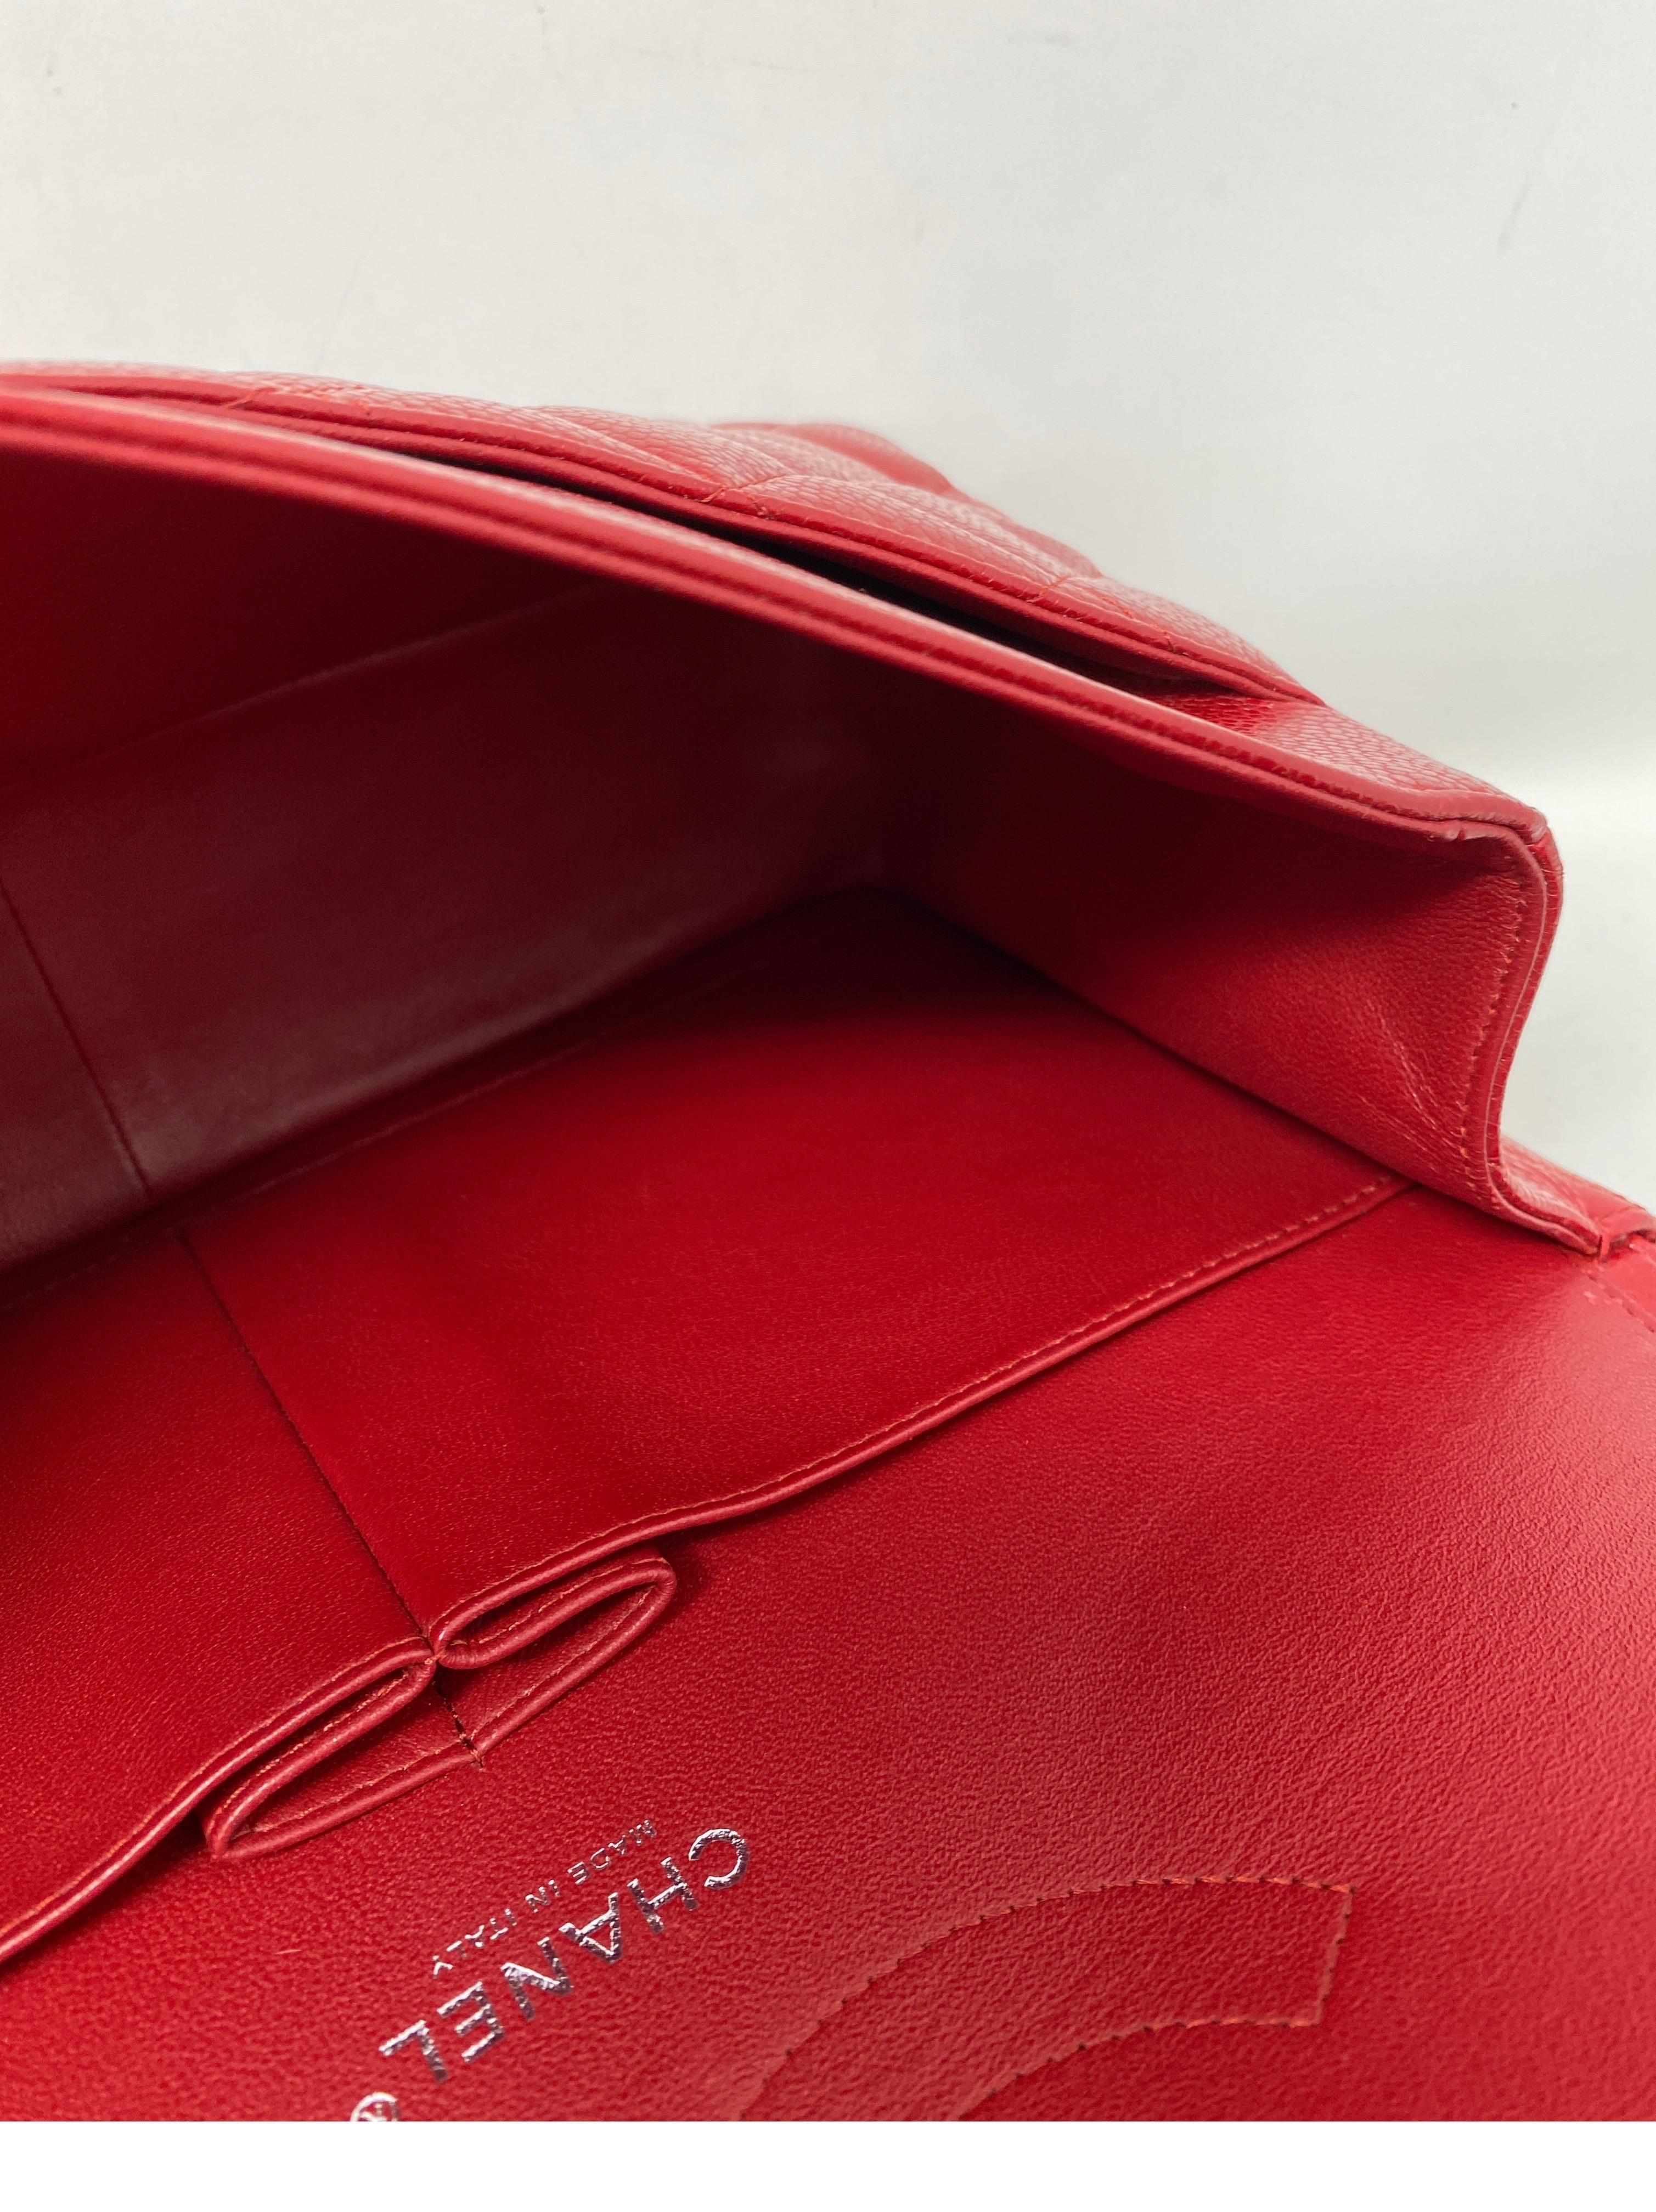 Chanel Red Jumbo Double Flap Bag  7